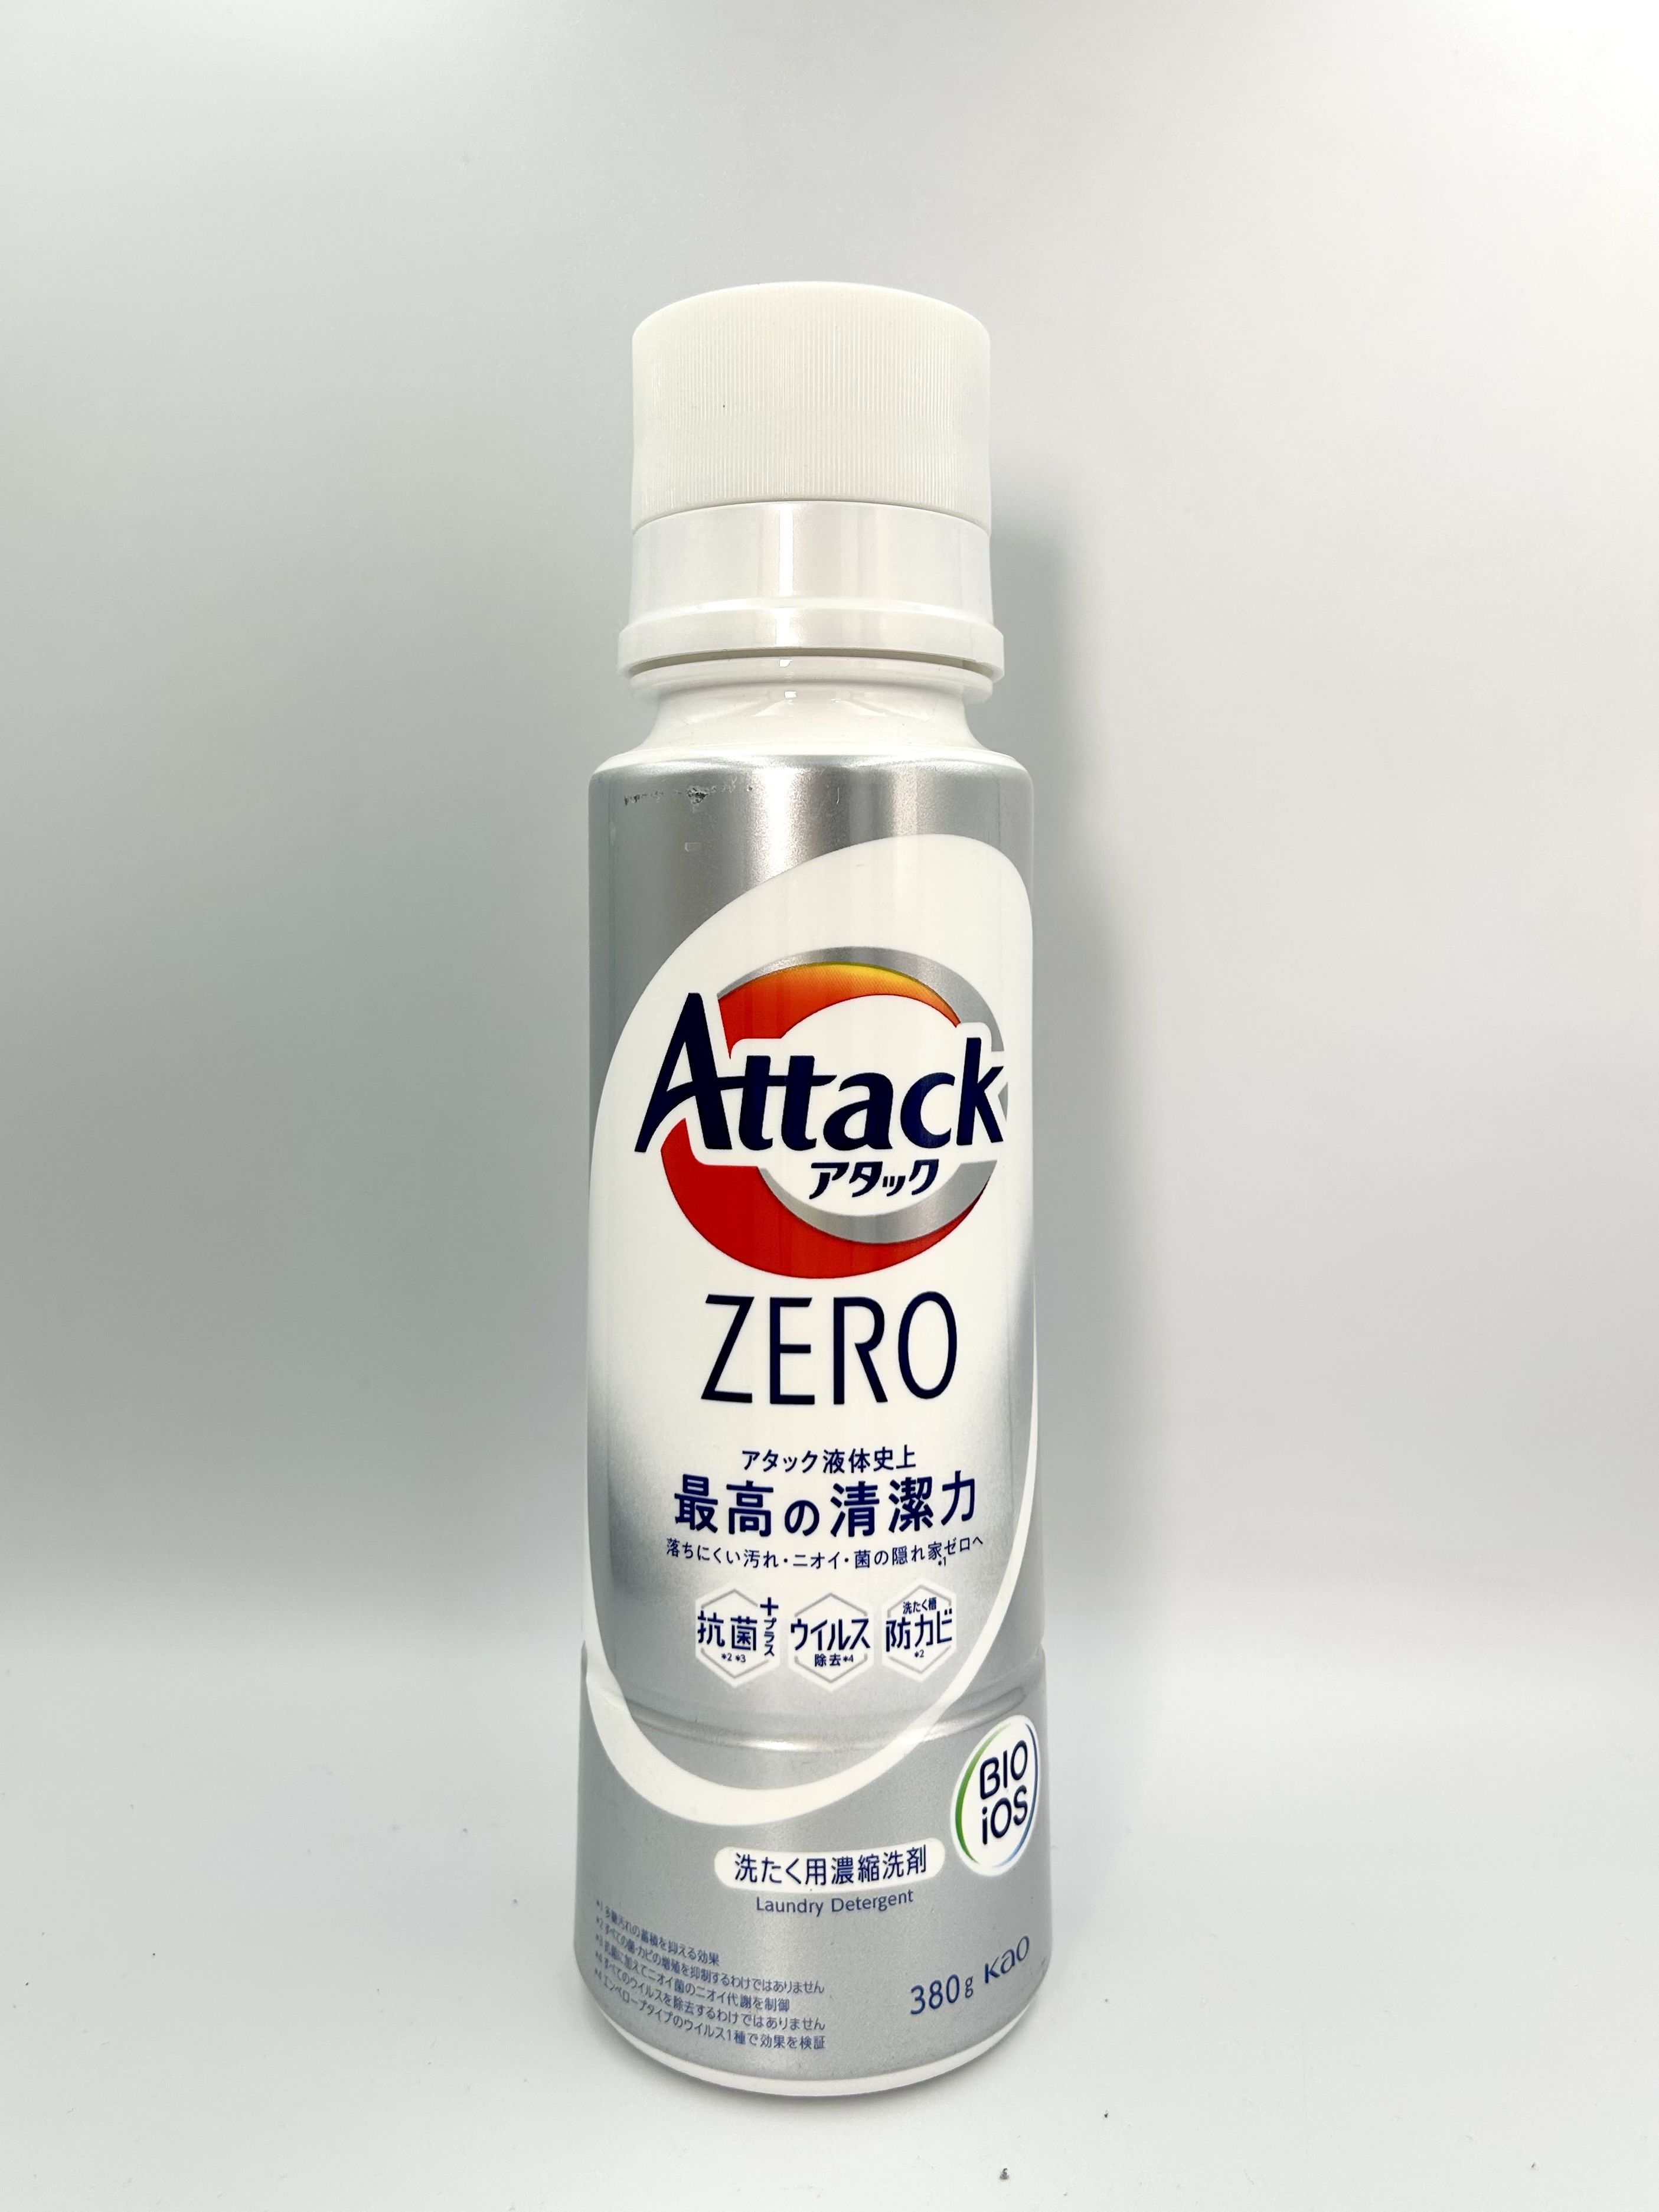 Kao Attack Zero Суперконцентрированный гель для стирки универсальный 380 гр на 38 стирок